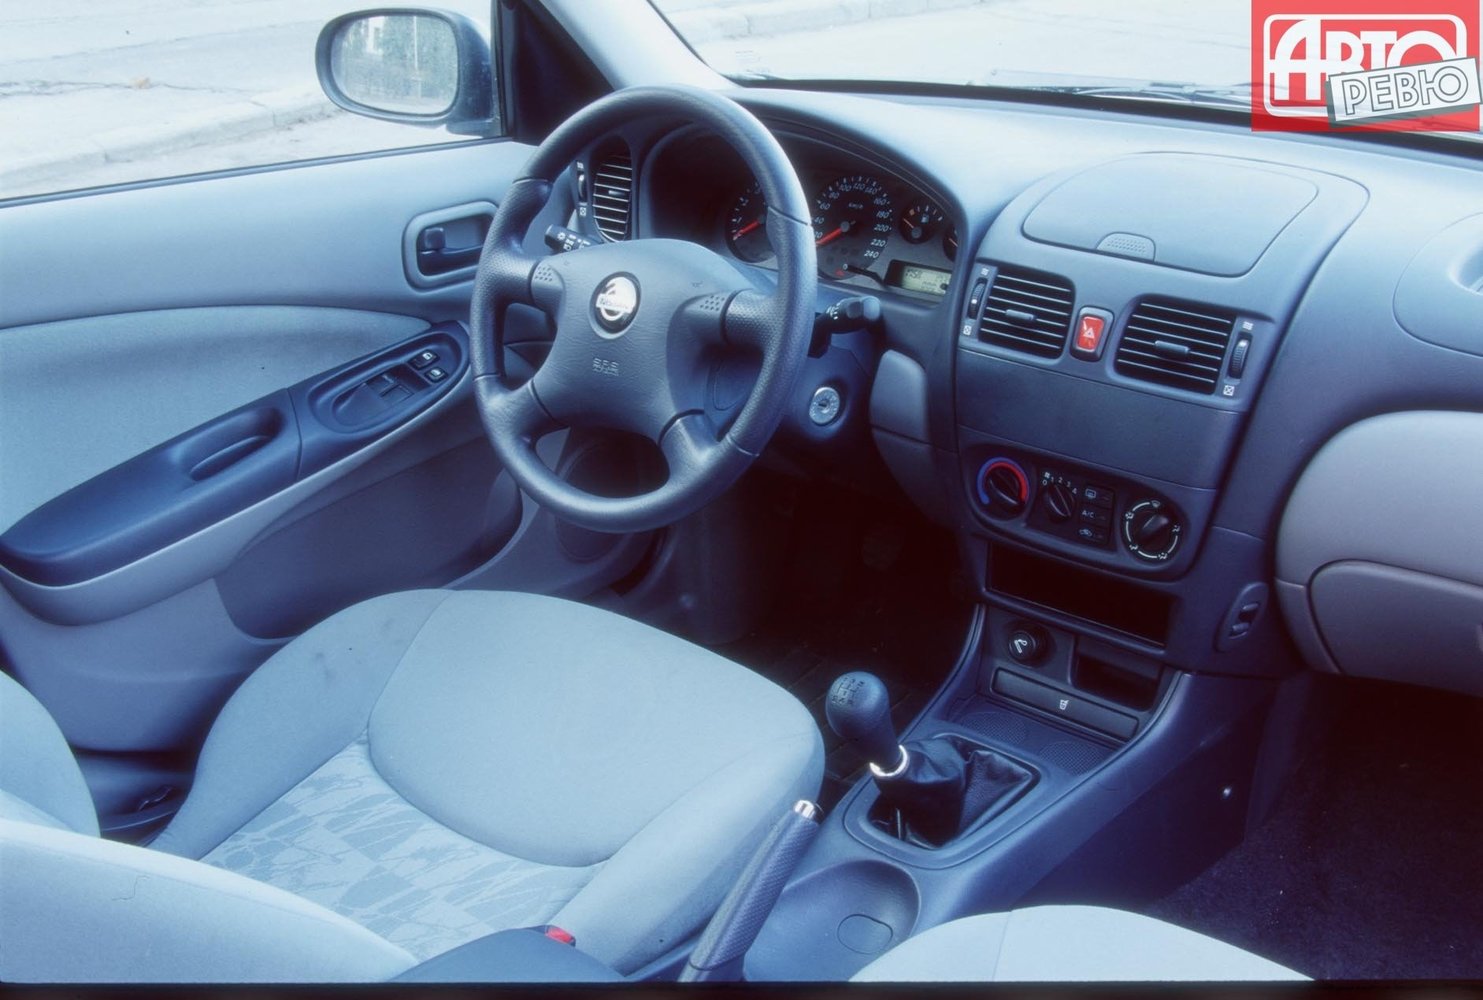 хэтчбек 5 дв. Nissan Almera 2000 - 2003г выпуска модификация 1.8 AT (114 л.с.)